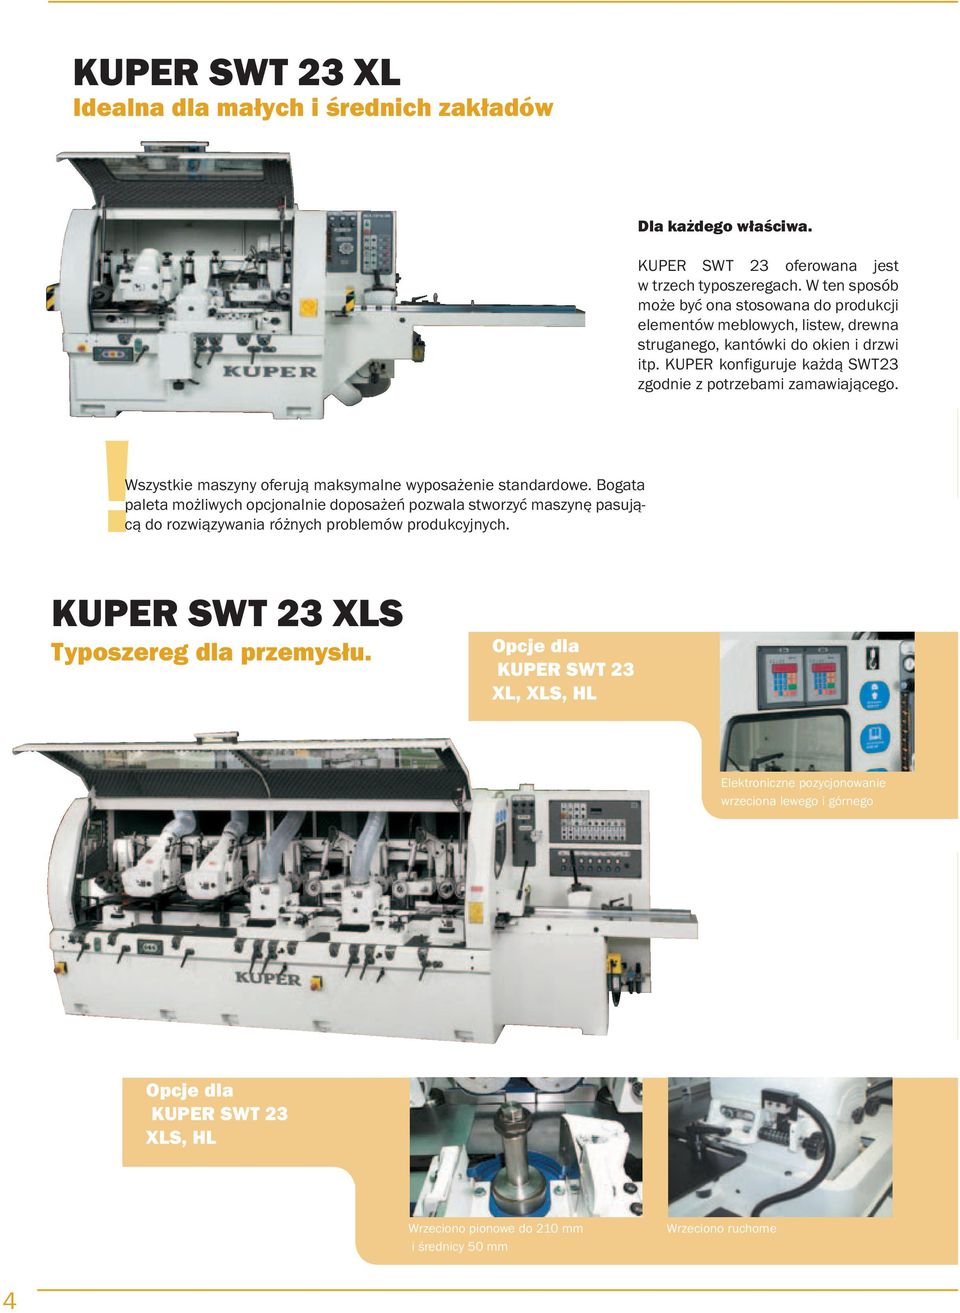 KUPER konfiguruje każdą SWT23 zgodnie z potrzebami zamawiającego. Wszystkie maszyny oferują maksymalne wyposażenie standardowe.